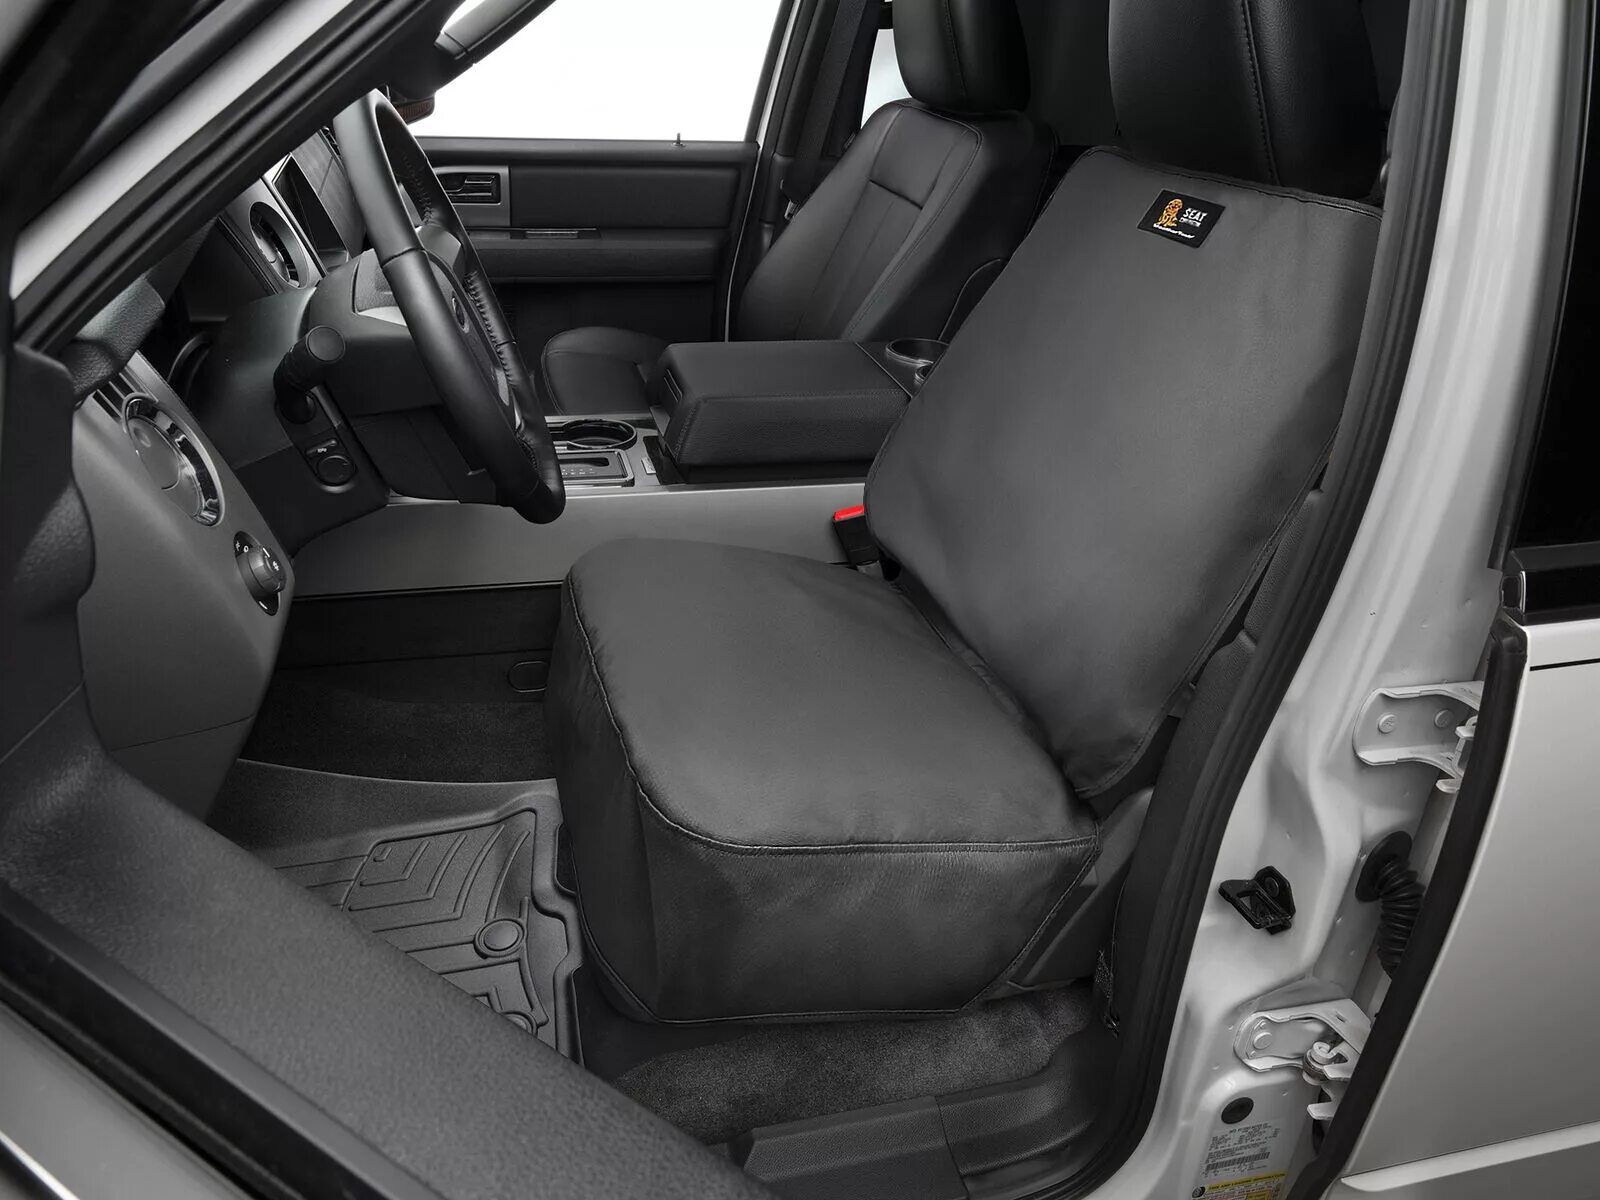 2014 Tundra Seat Covers. 2021 F150 Rear Seat. Сидения Сатурн Вуе. Сидение Форд ф250.